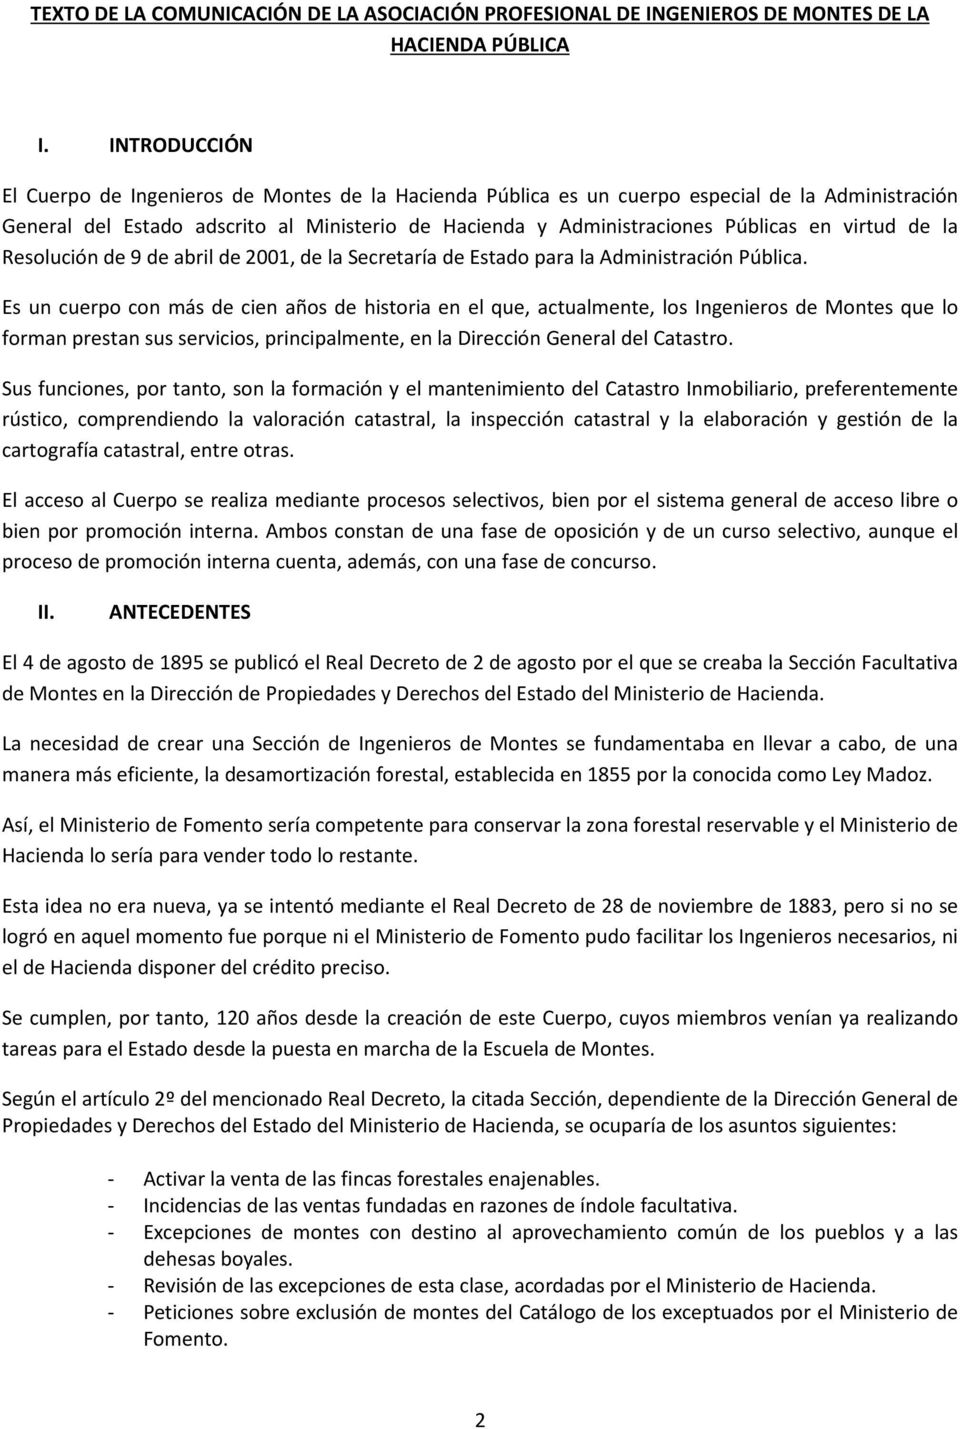 virtud de la Resolución de 9 de abril de 2001, de la Secretaría de Estado para la Administración Pública.